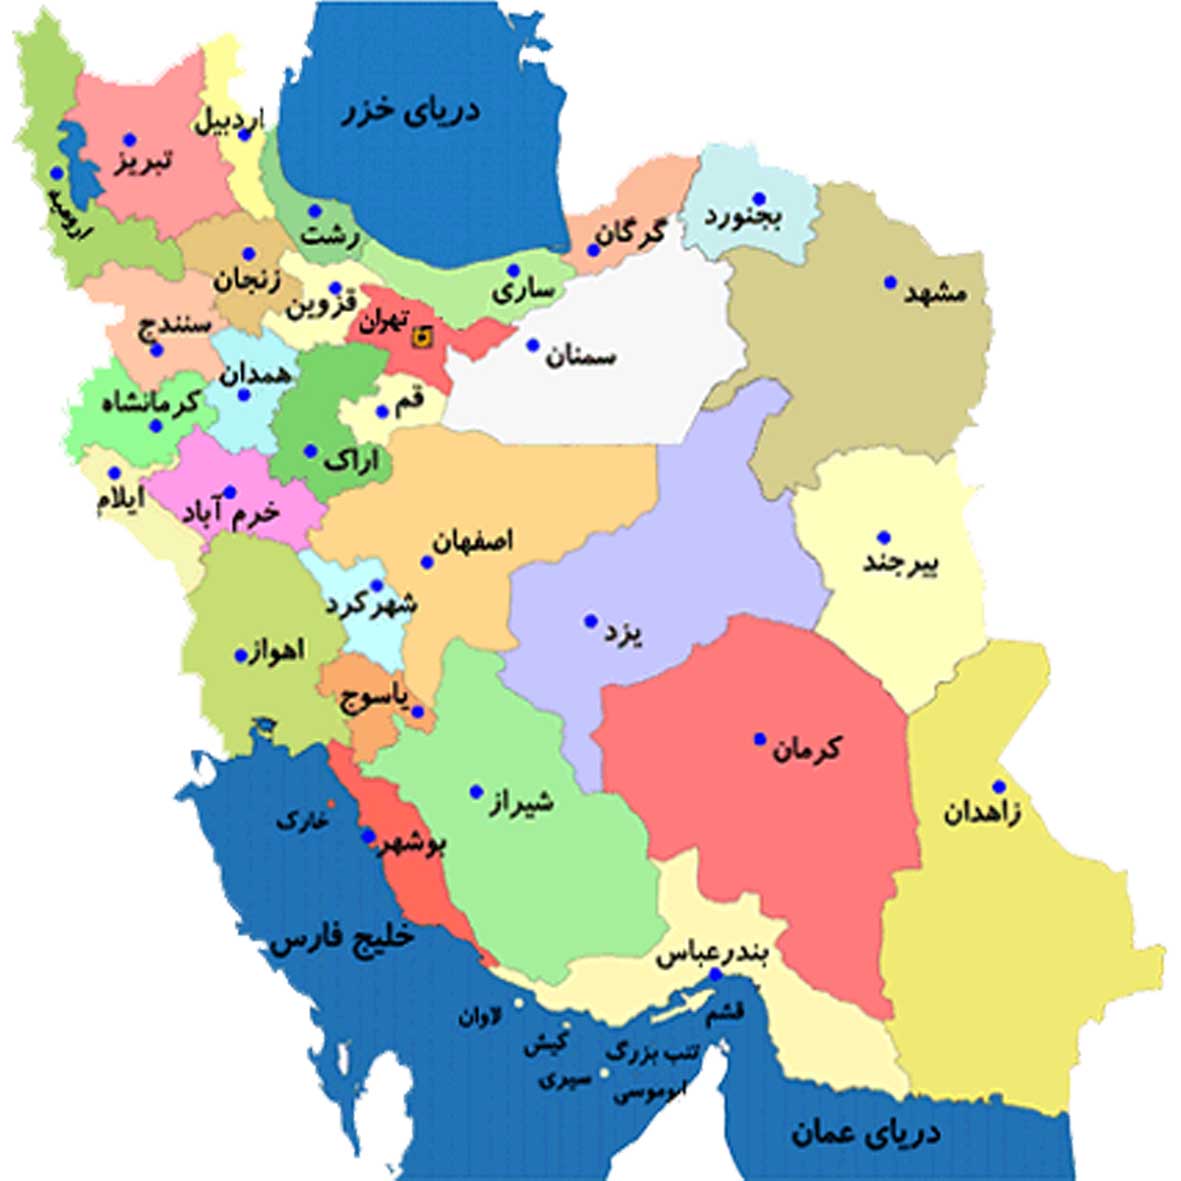 عکس نقشه ی ایران و همسایه هایش